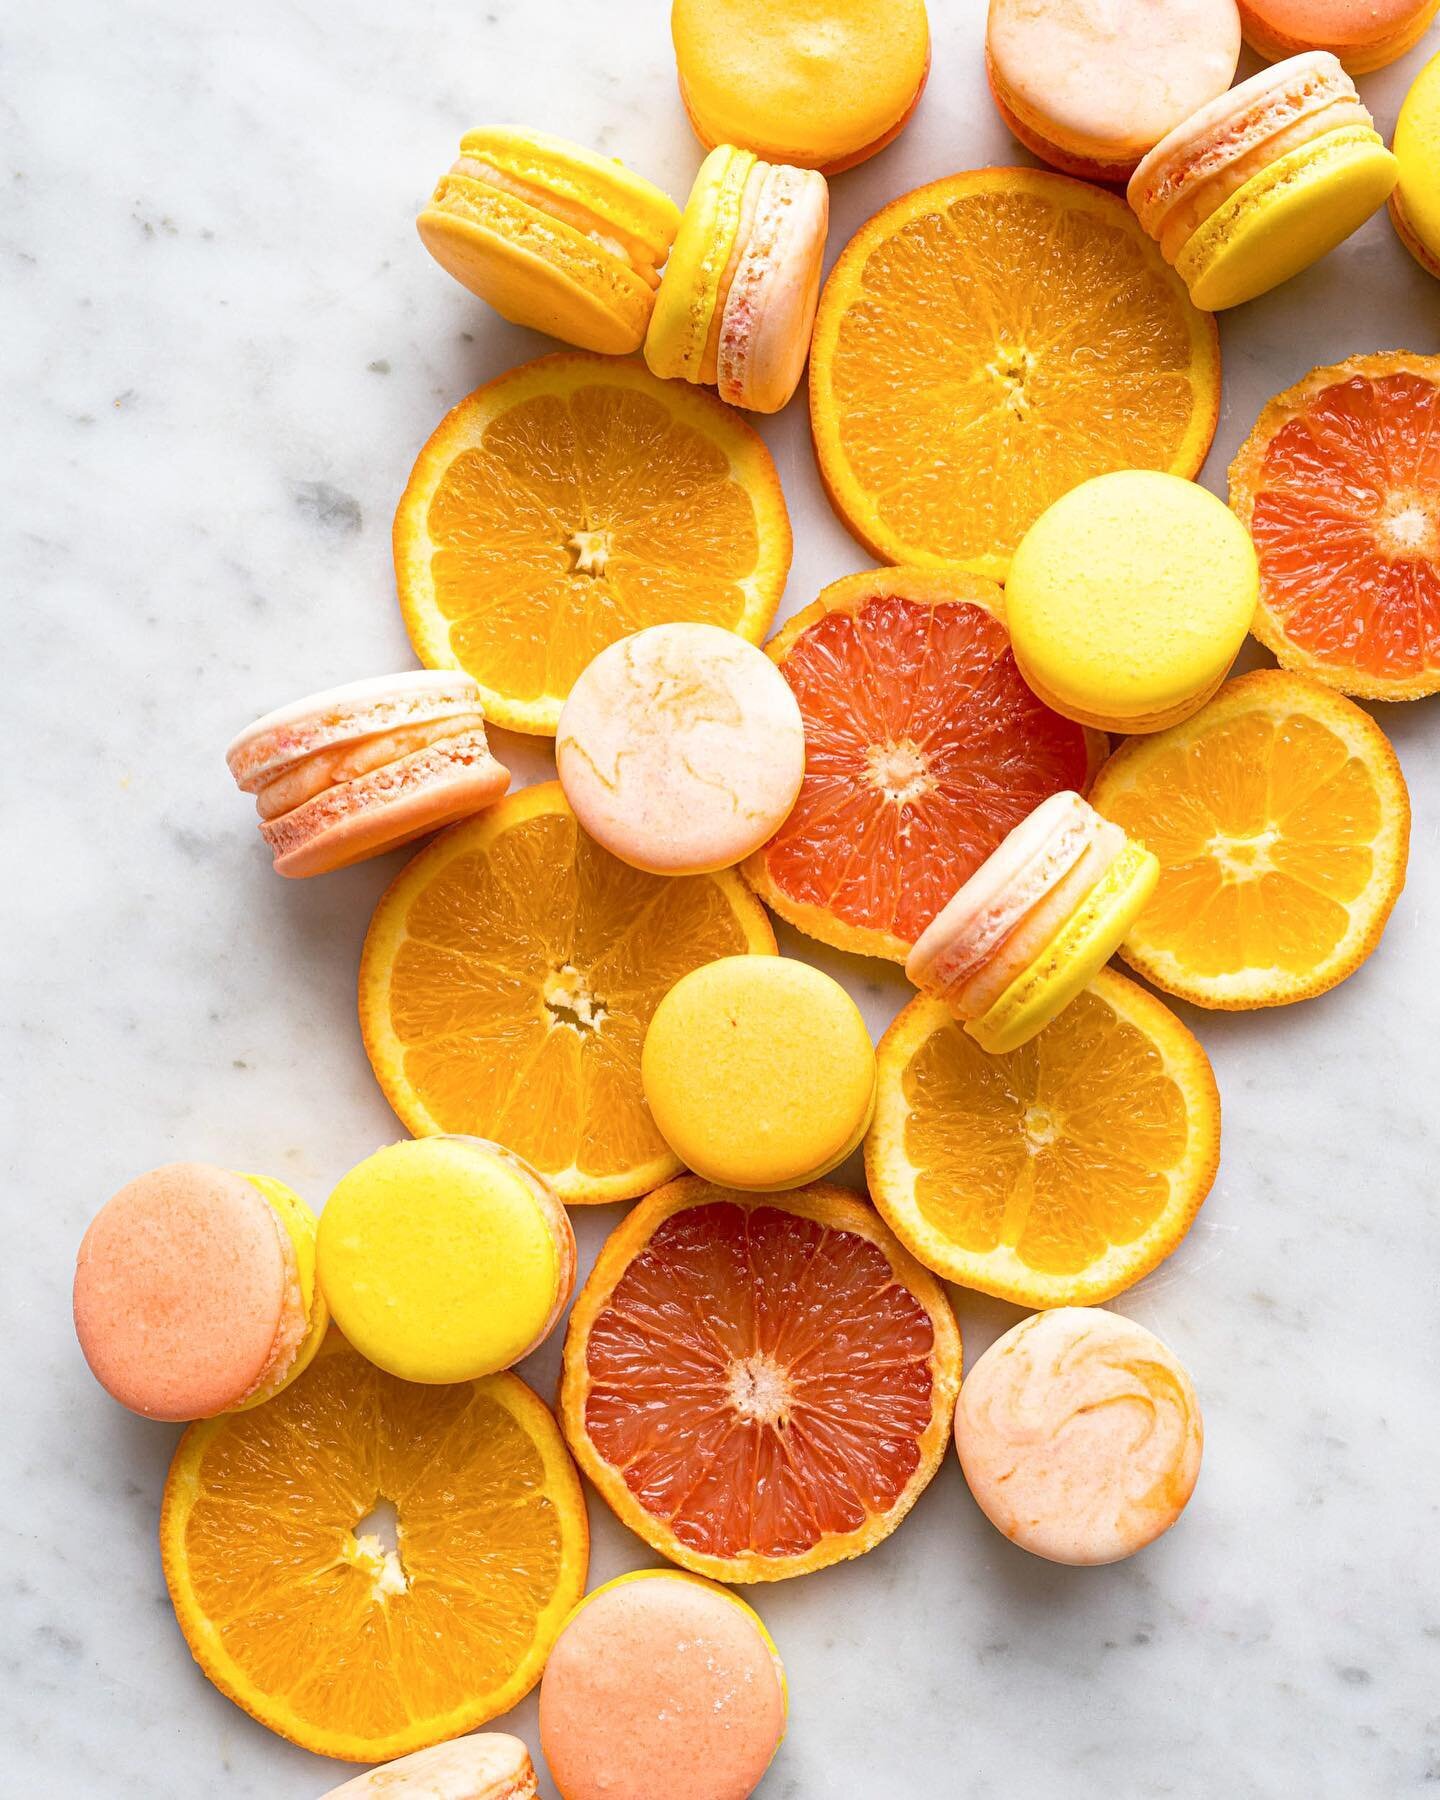 channeling 16 days to spring🌼🌿 zesty or sweet? we love a silky citrus buttercream texture between the sweeter macaron shells☺️

📸 @arieltarr 

.
.
.
#macarons #macaronsofinstagram #citrus #buttercream #lemon #orange #baking #baker #bakedgoods #bak